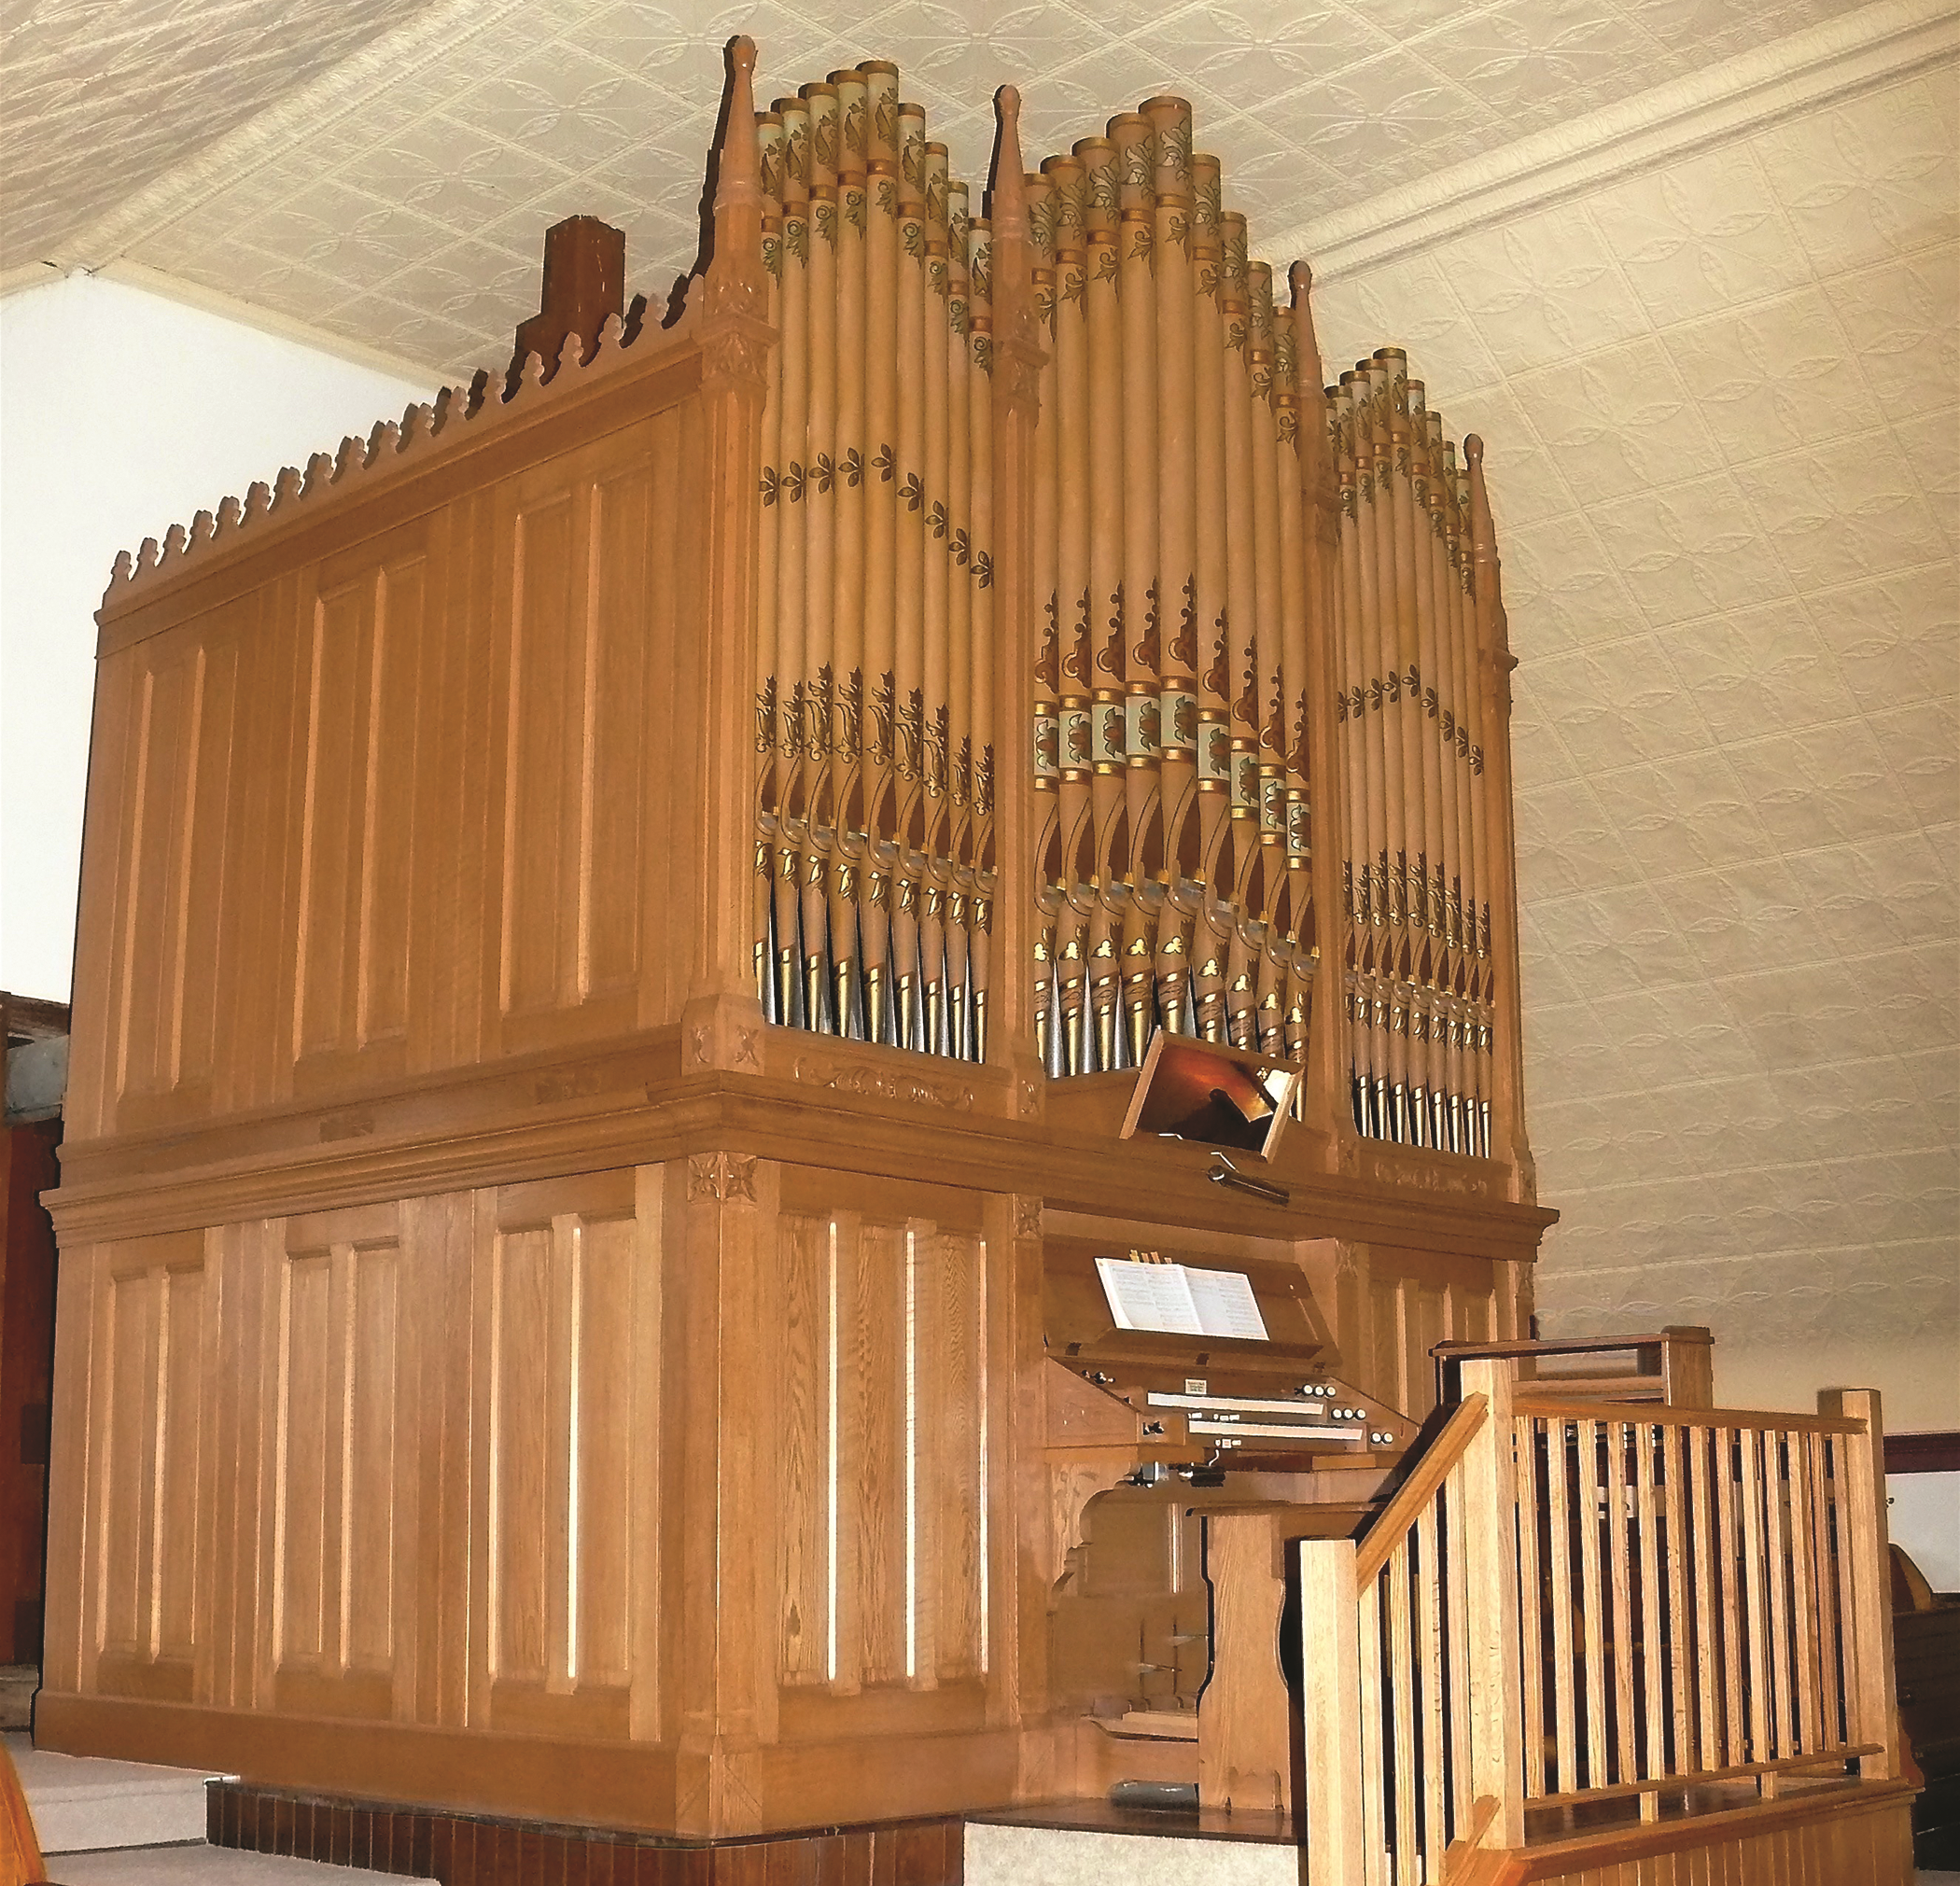 a large organ in a church